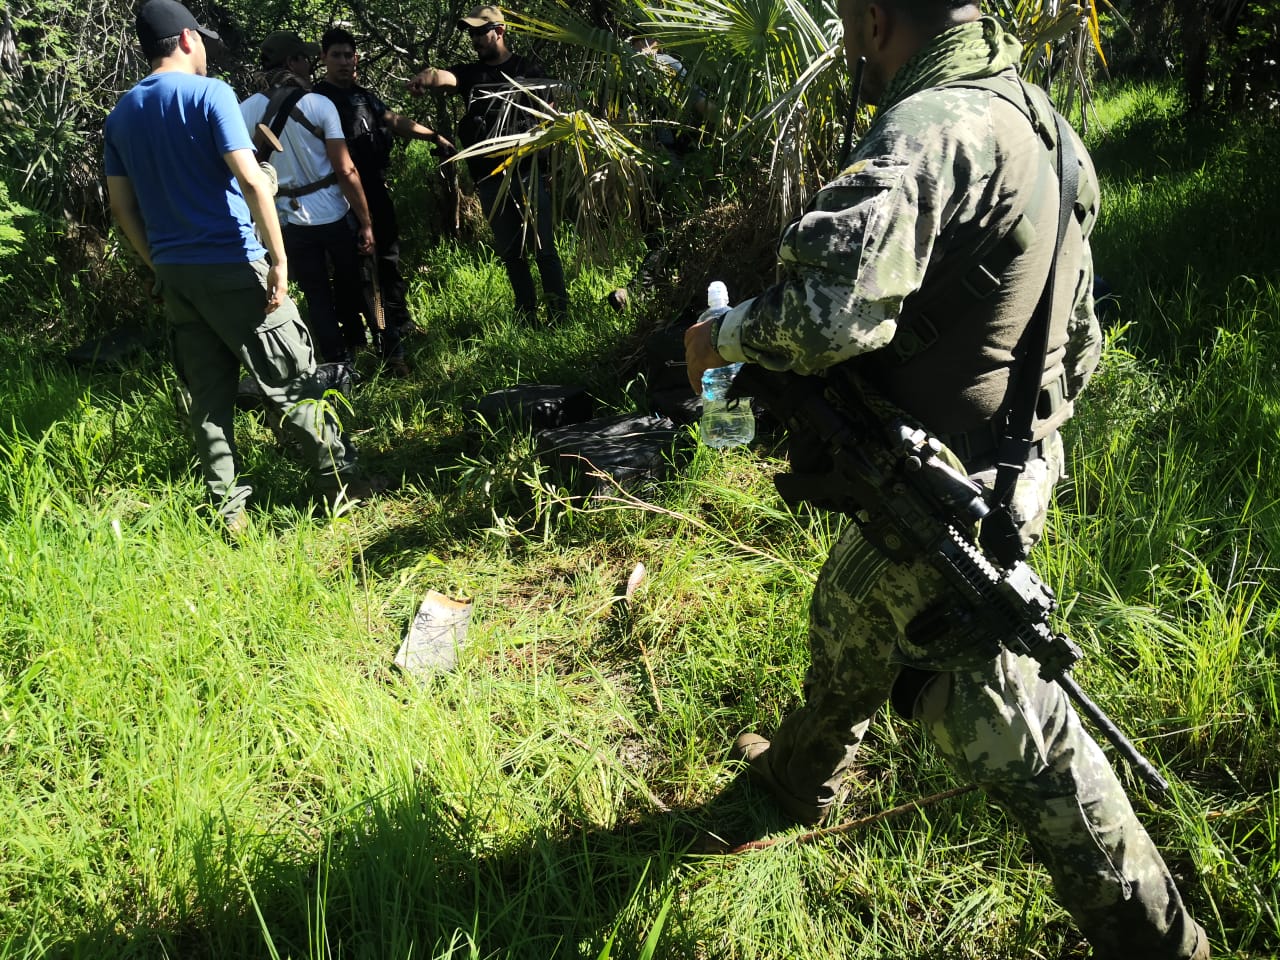 300 kg de Cocaína fueron incautados. Un presunto narco fue herido en la pierna. Fotos: Ministerio Público